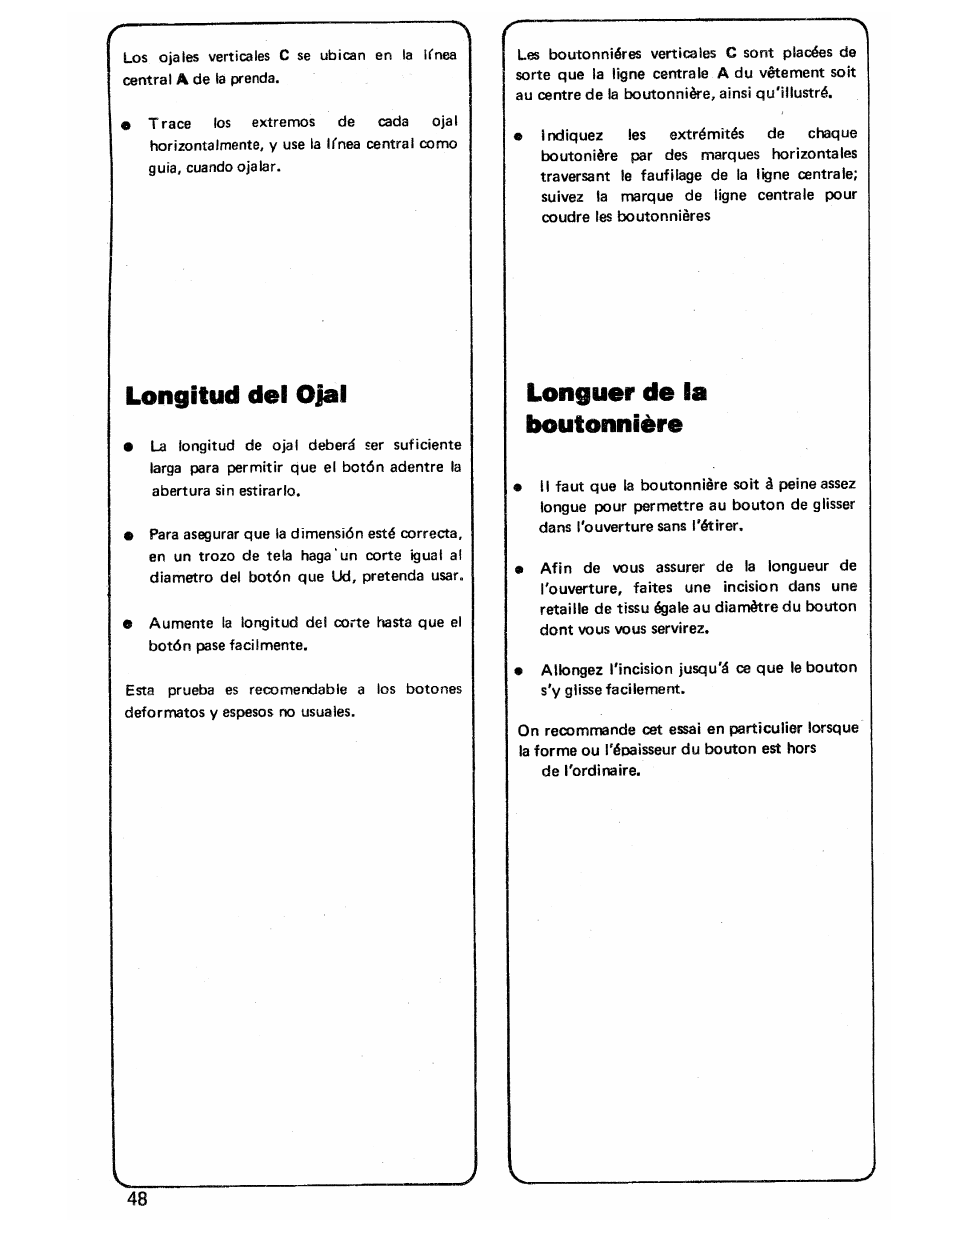 Longitud del ojal, Longuer de la boutonnière | SINGER 3103 User Manual | Page 50 / 71